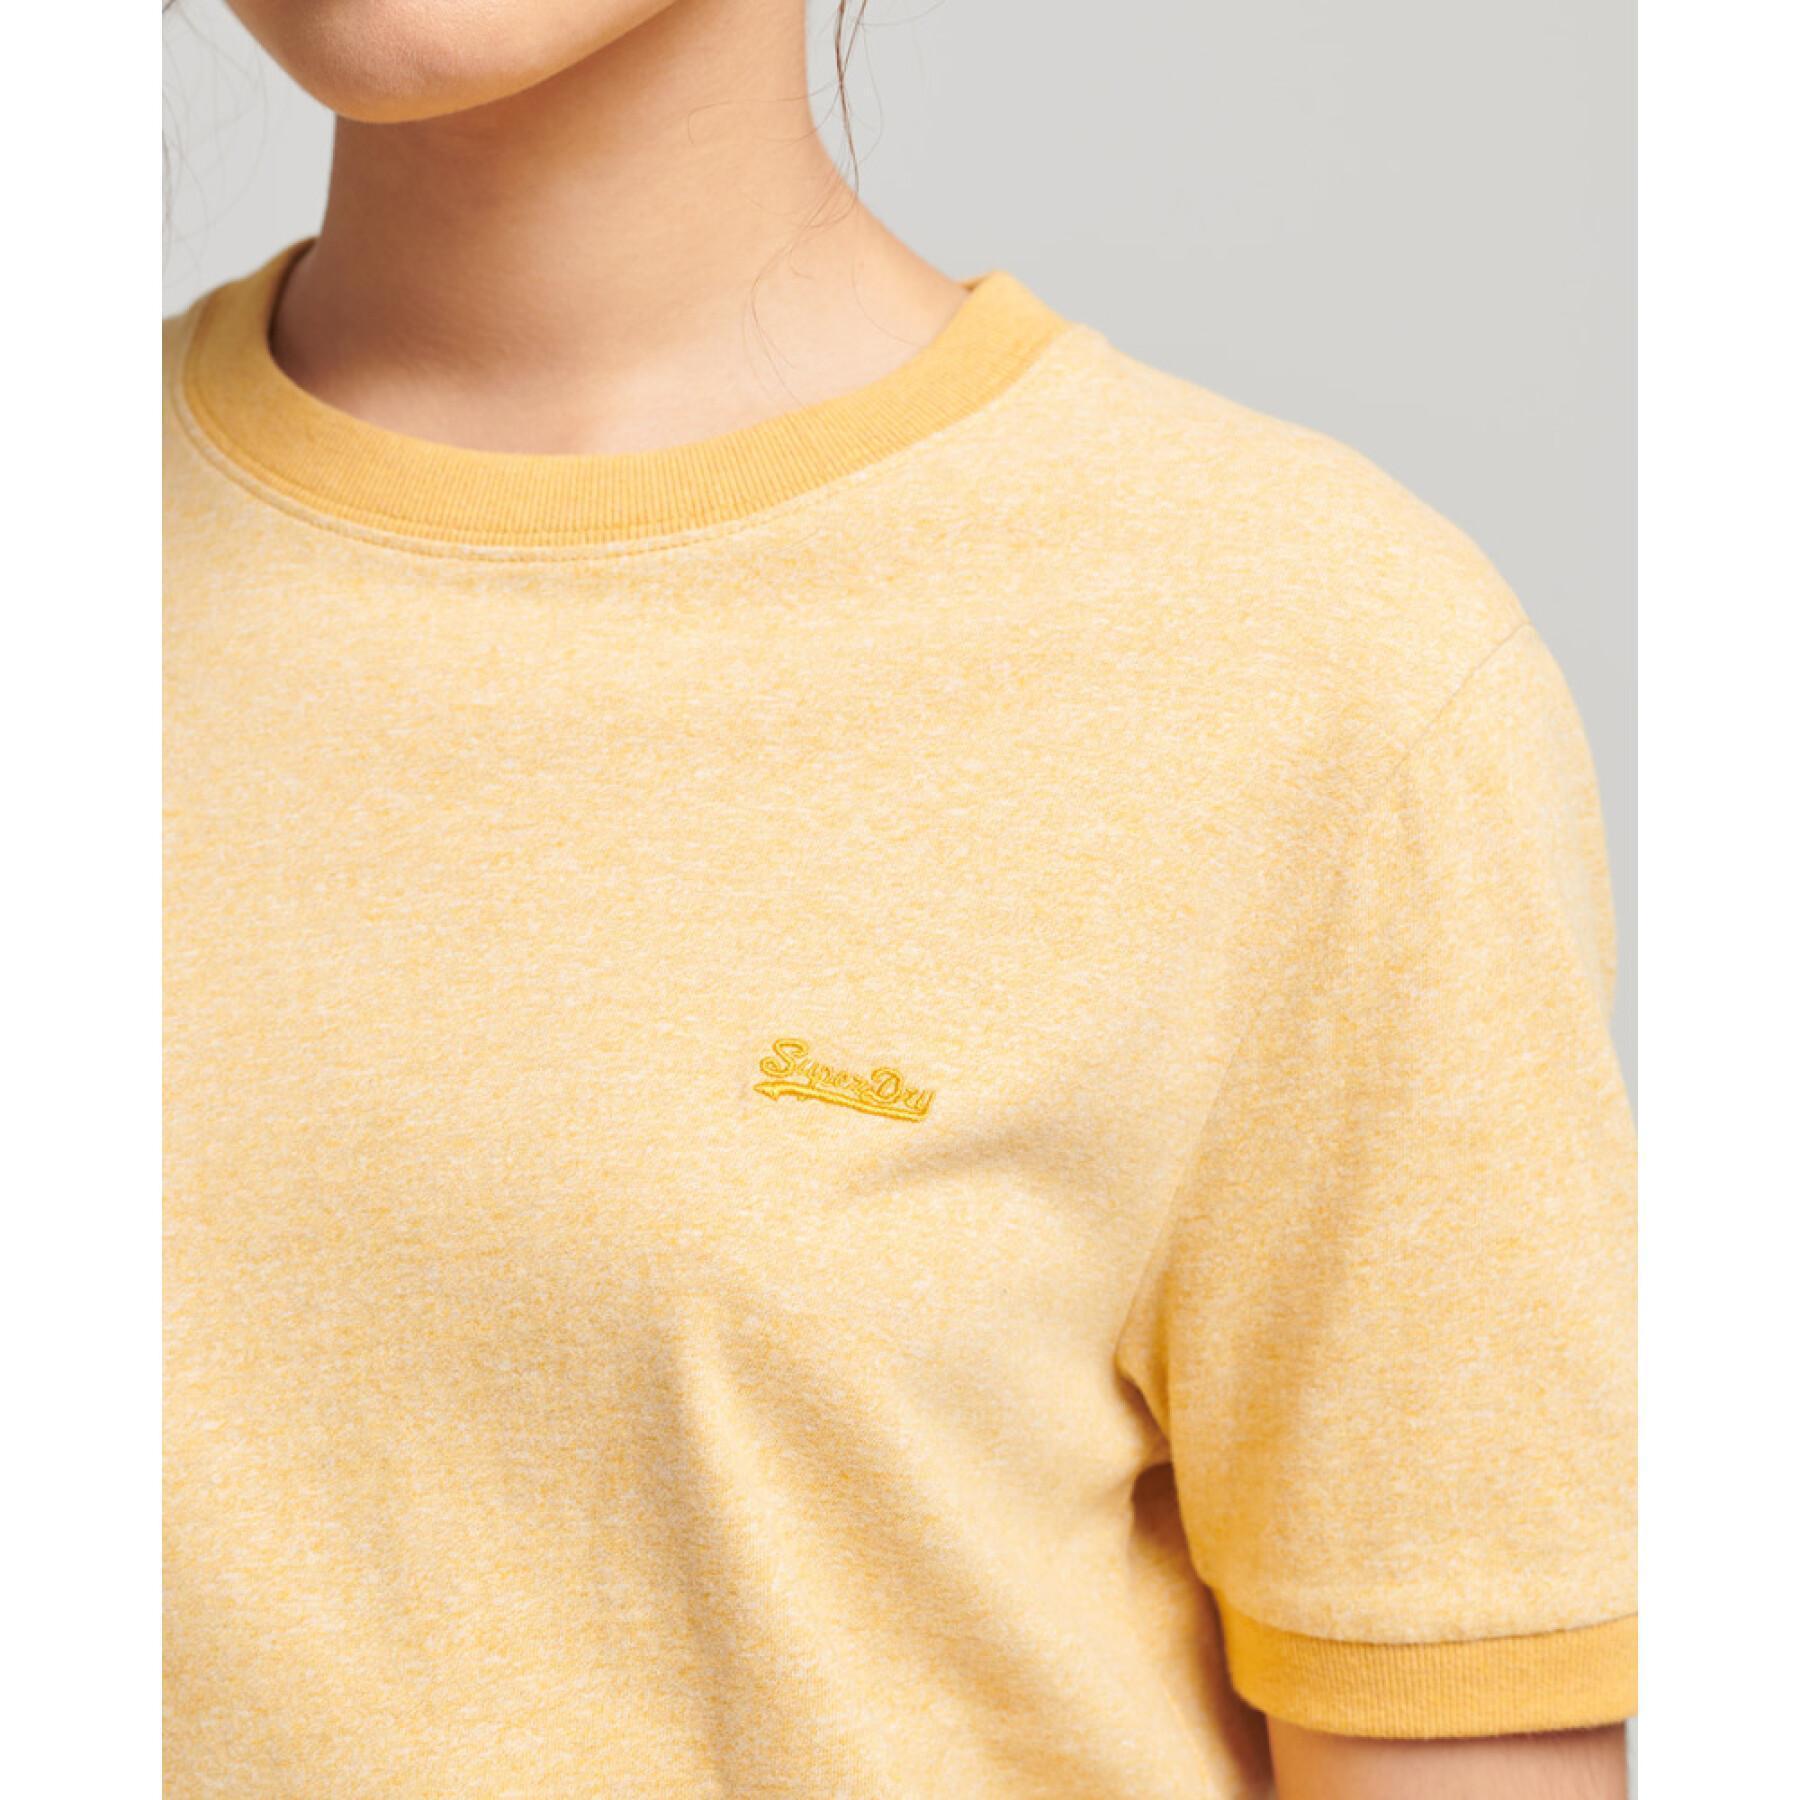 Kontrastowy t-shirt z bawełny organicznej dla dziewczynek Superdry Vintage Logo